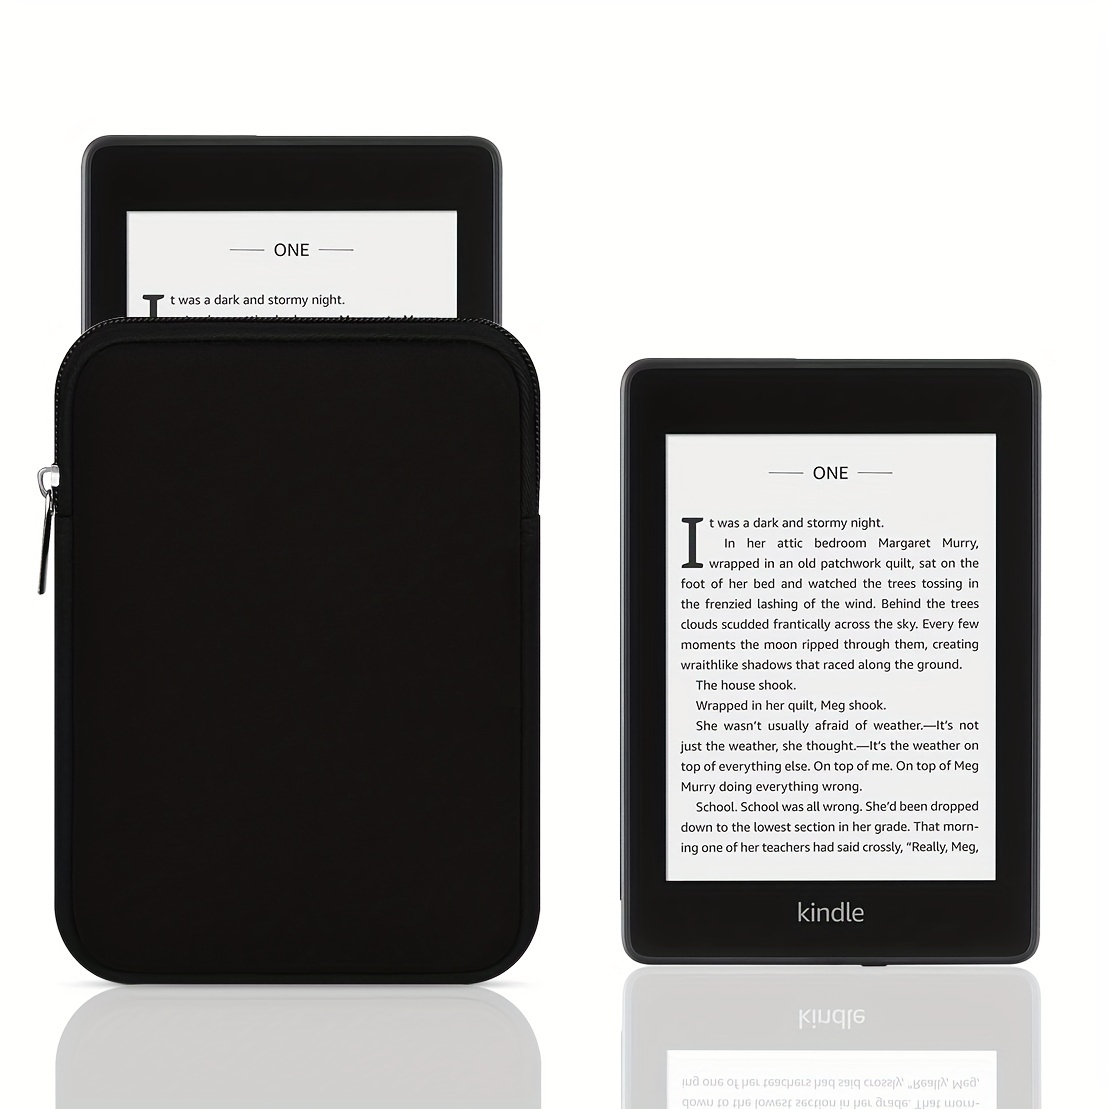 Funda para Kindle de 11ª generación de  de 6 pulgadas [versión 2022,  modelo: C2V2L3]-Smart Auto Sleep/Wake, funda de piel sintética con patrón